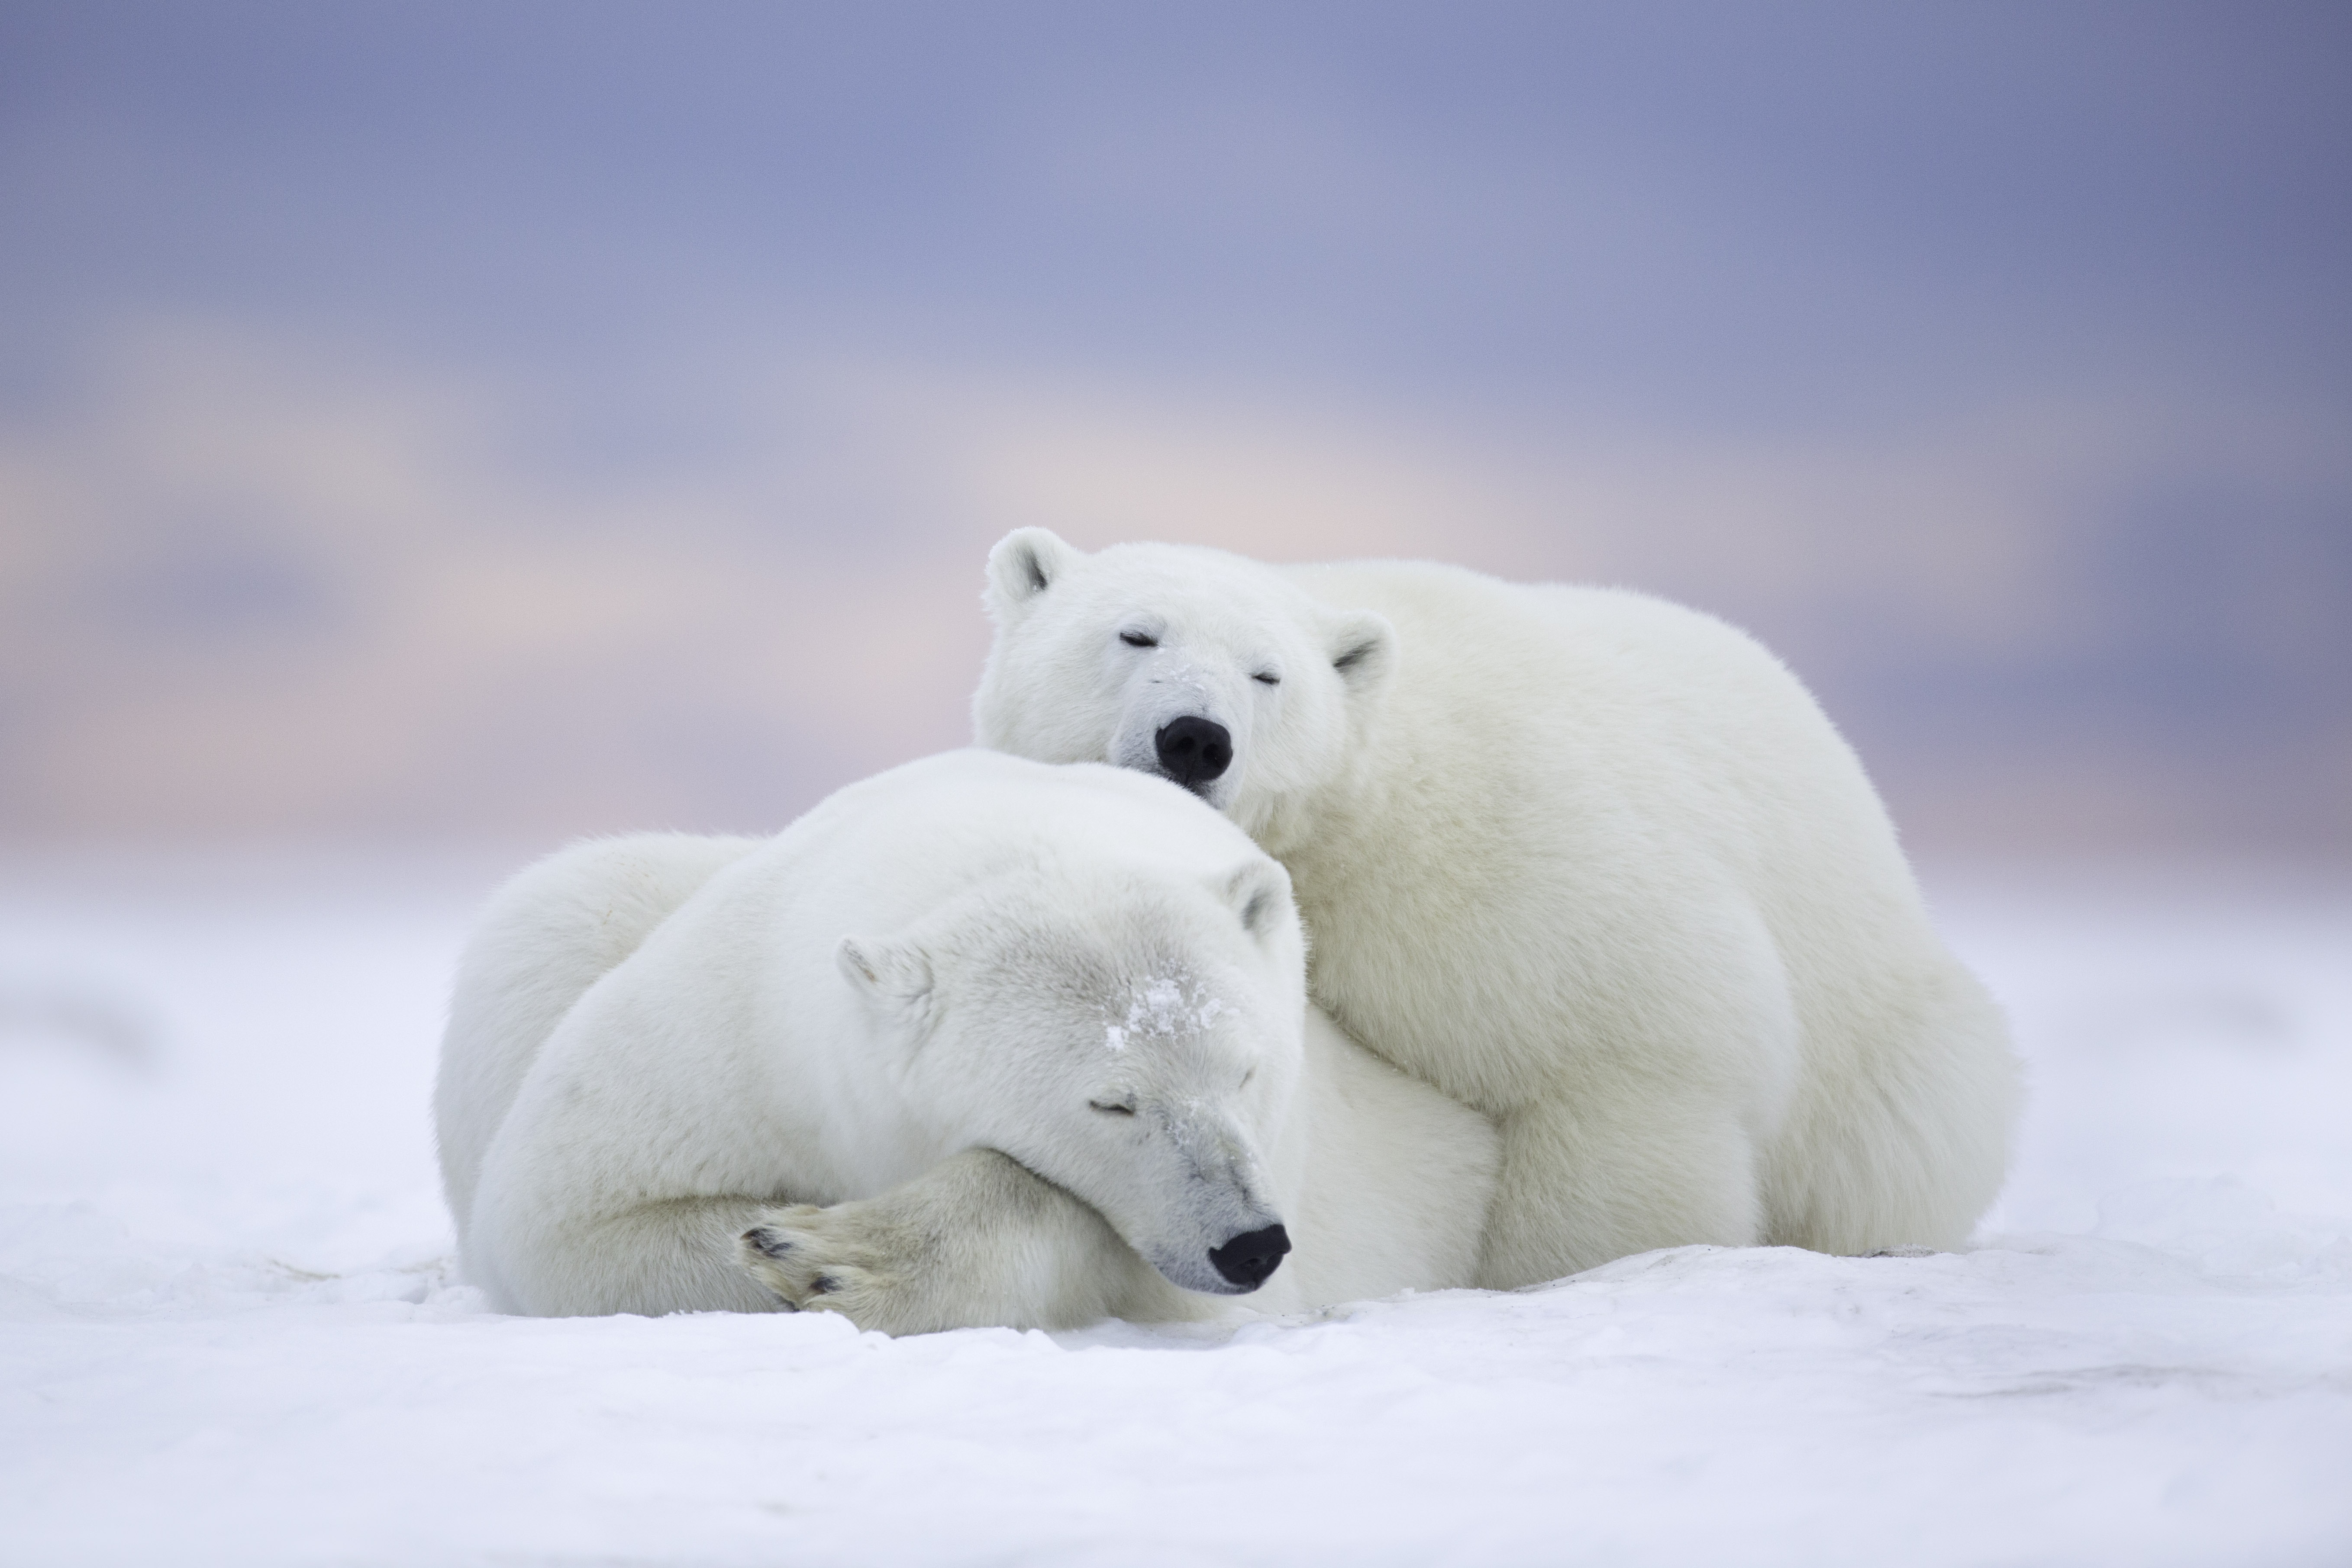 orso polare wallpaper hd,orso polare,orso,artico,orso polare,oceano artico